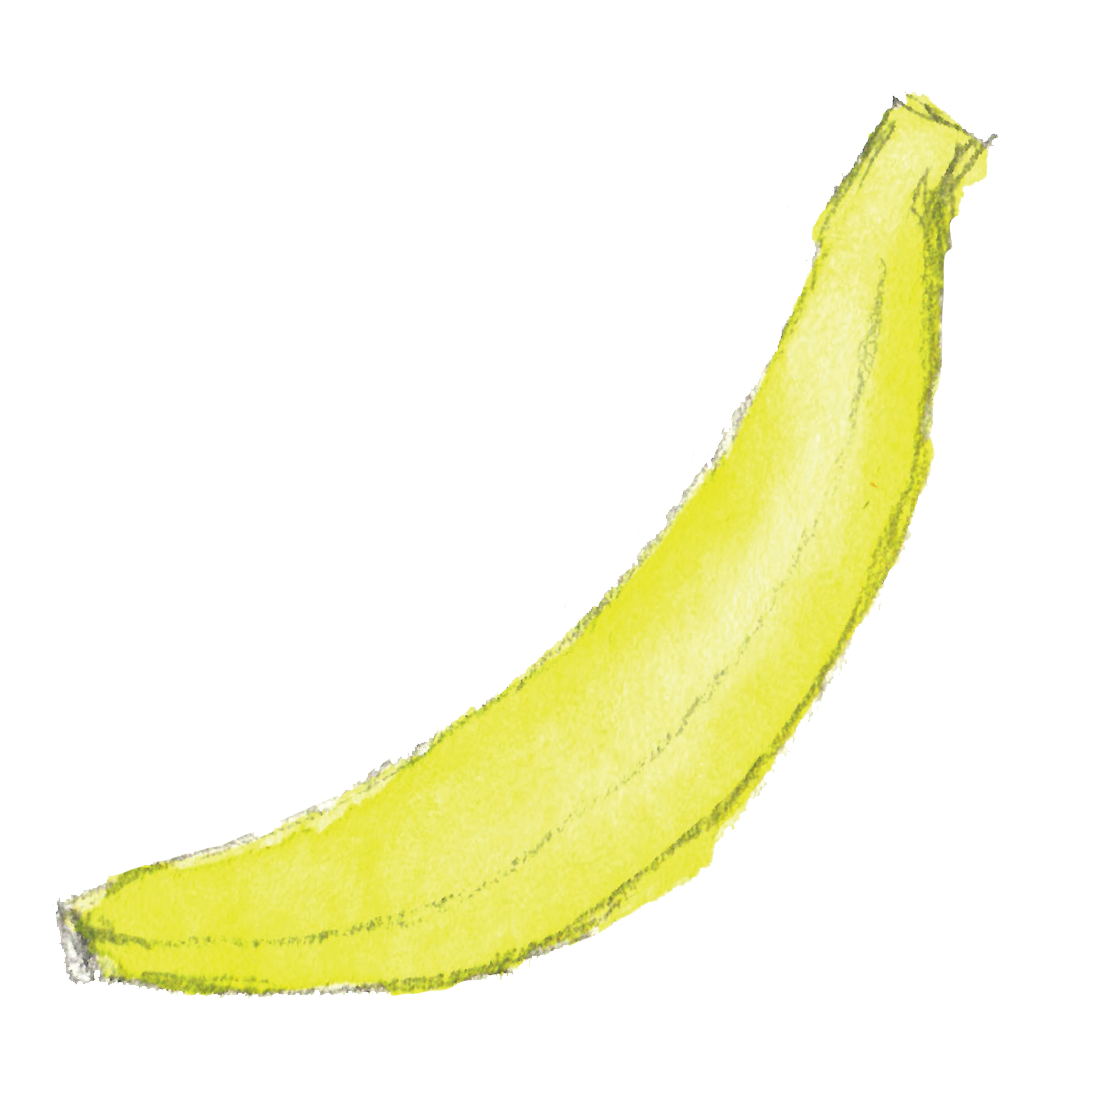 バナナ1本